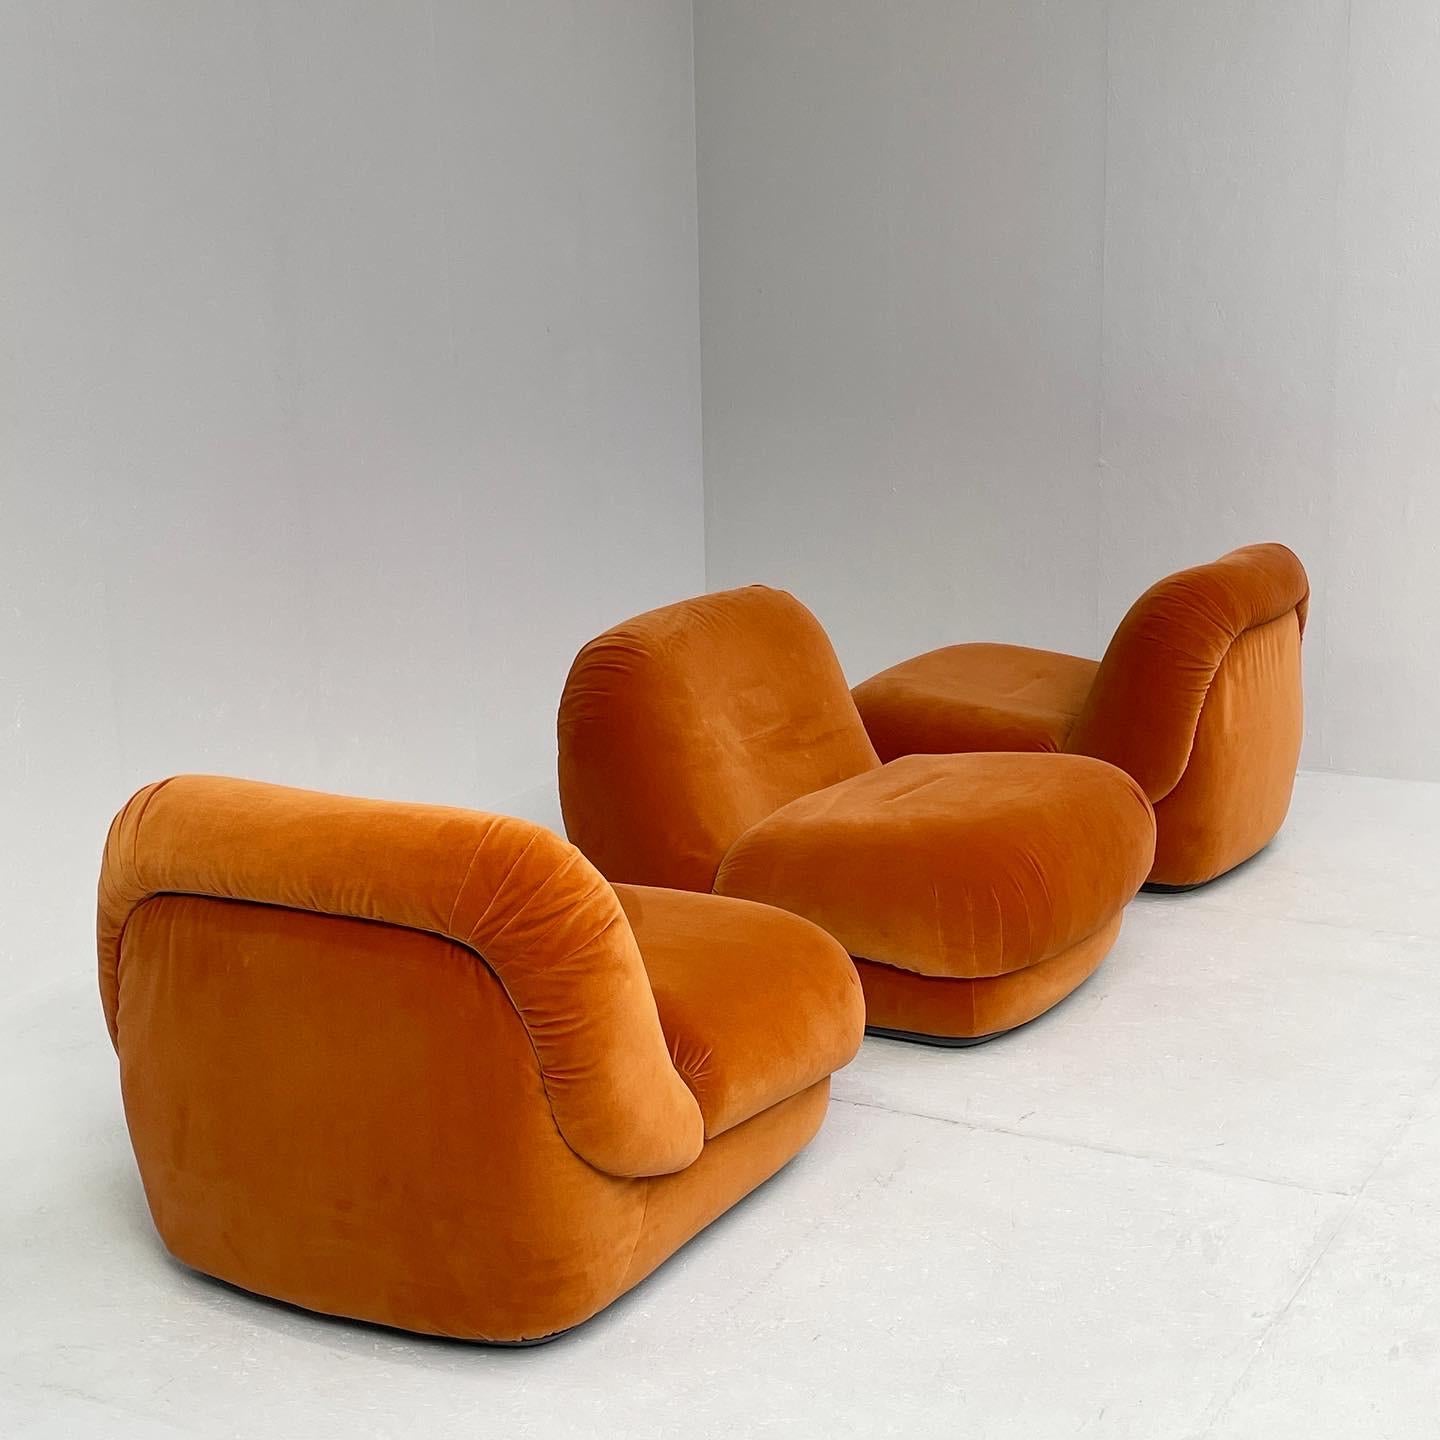 Plastic Alberto Rosselli for Saporiti, 'Maxijumbo' lounge chairs, italy, 1970s